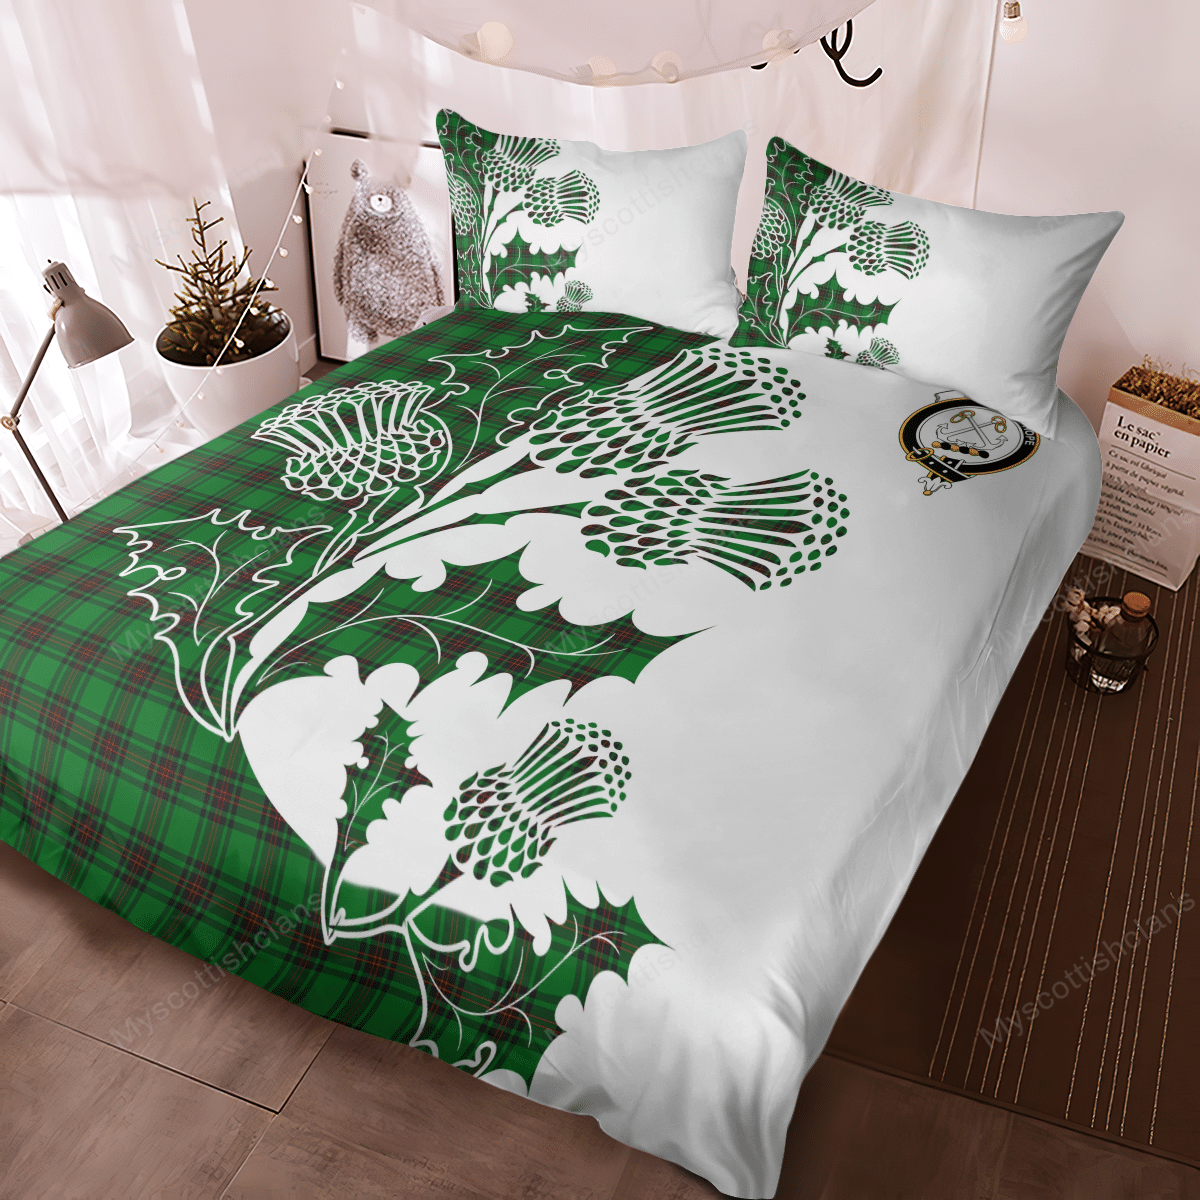 Kinnear Tartan Crest Bedding Set - Thistle Style